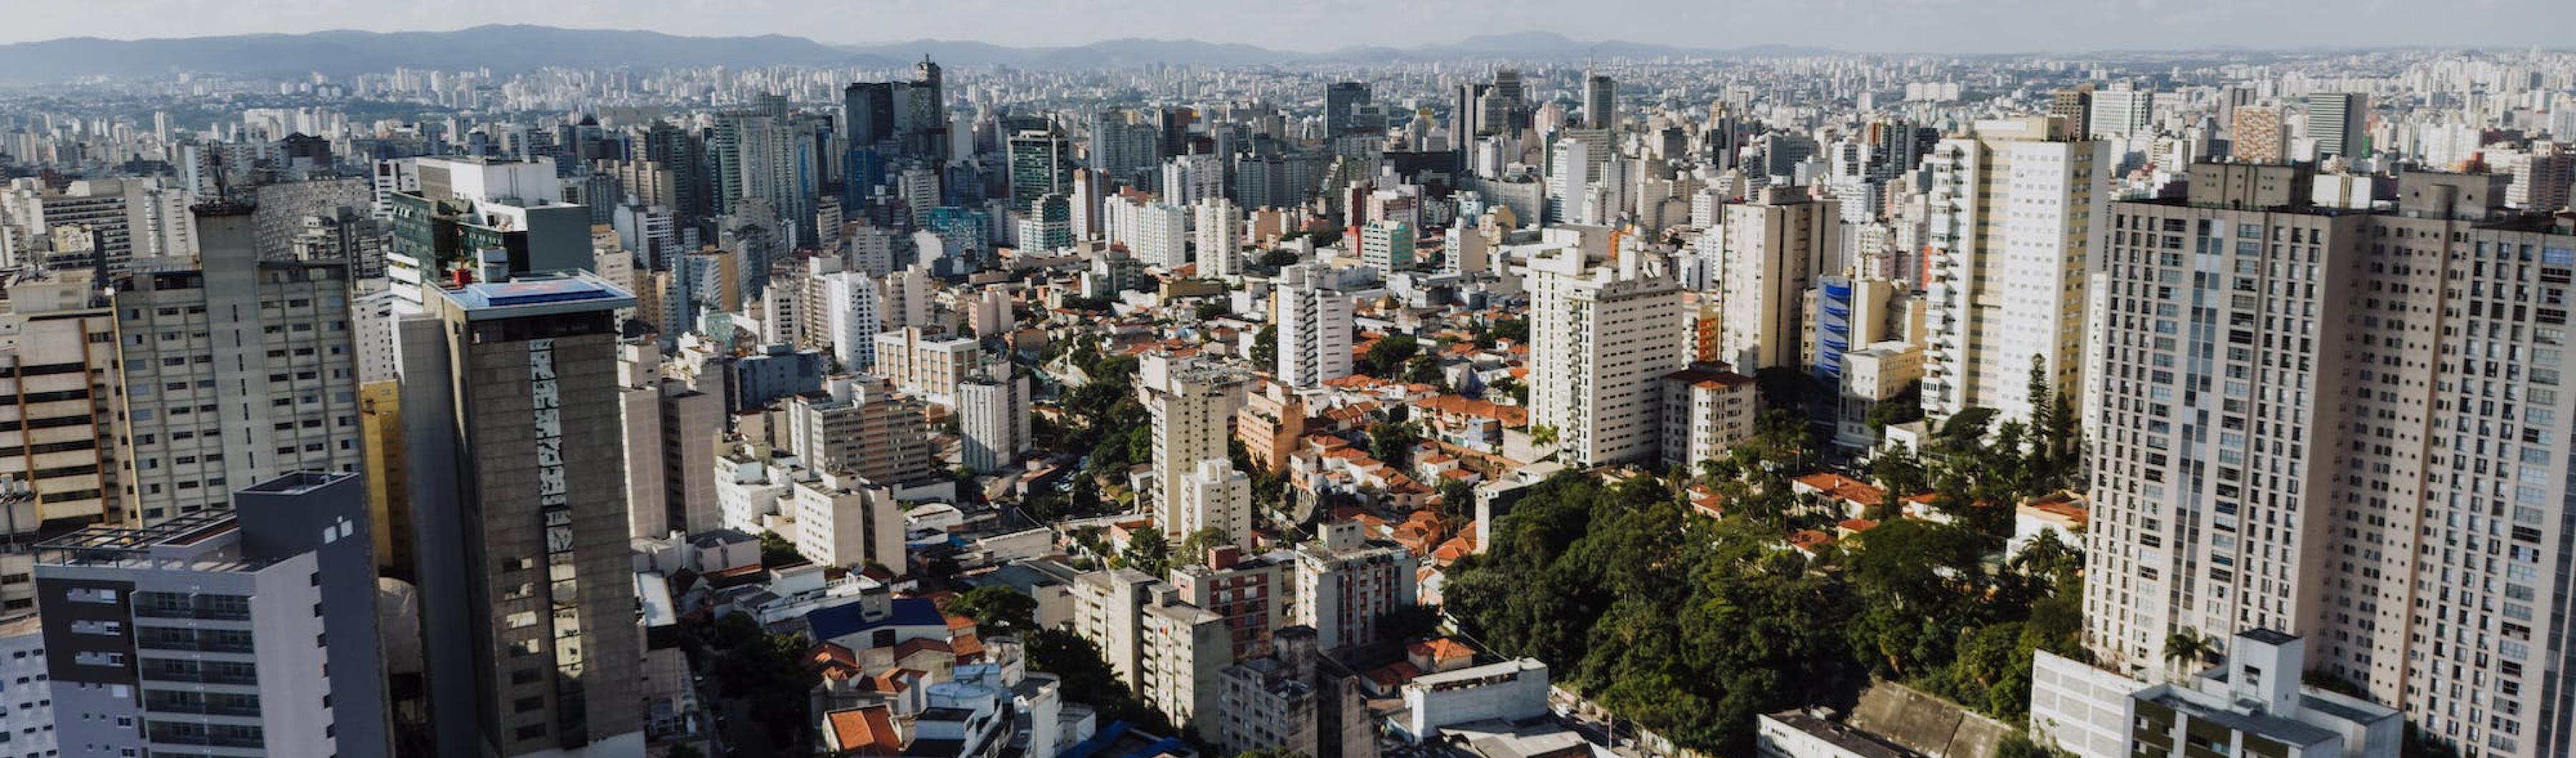 Foto del horizonte de Sao Paulo